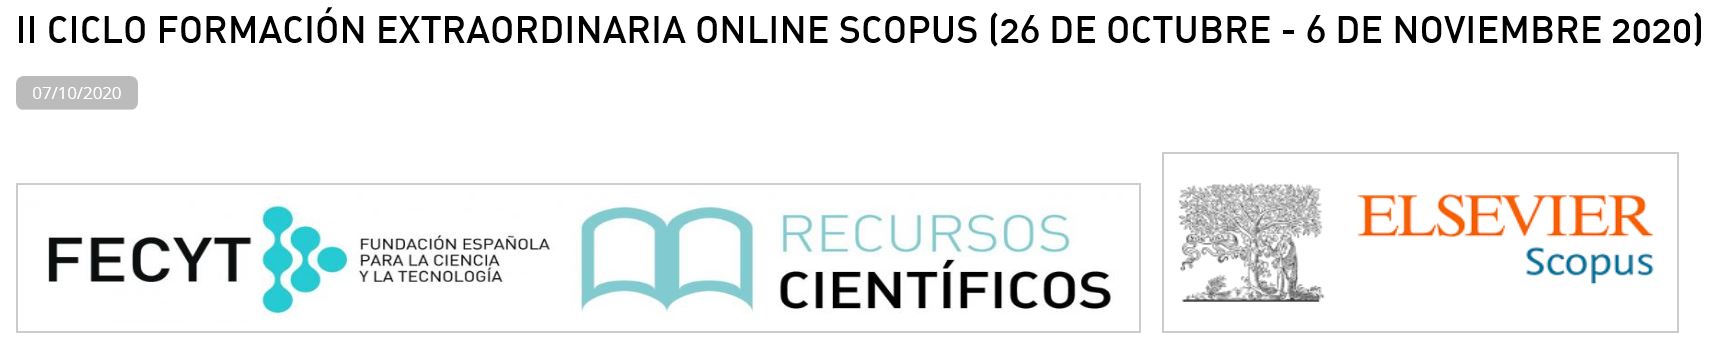 II Ciclo de Formación Online Socpus 2020